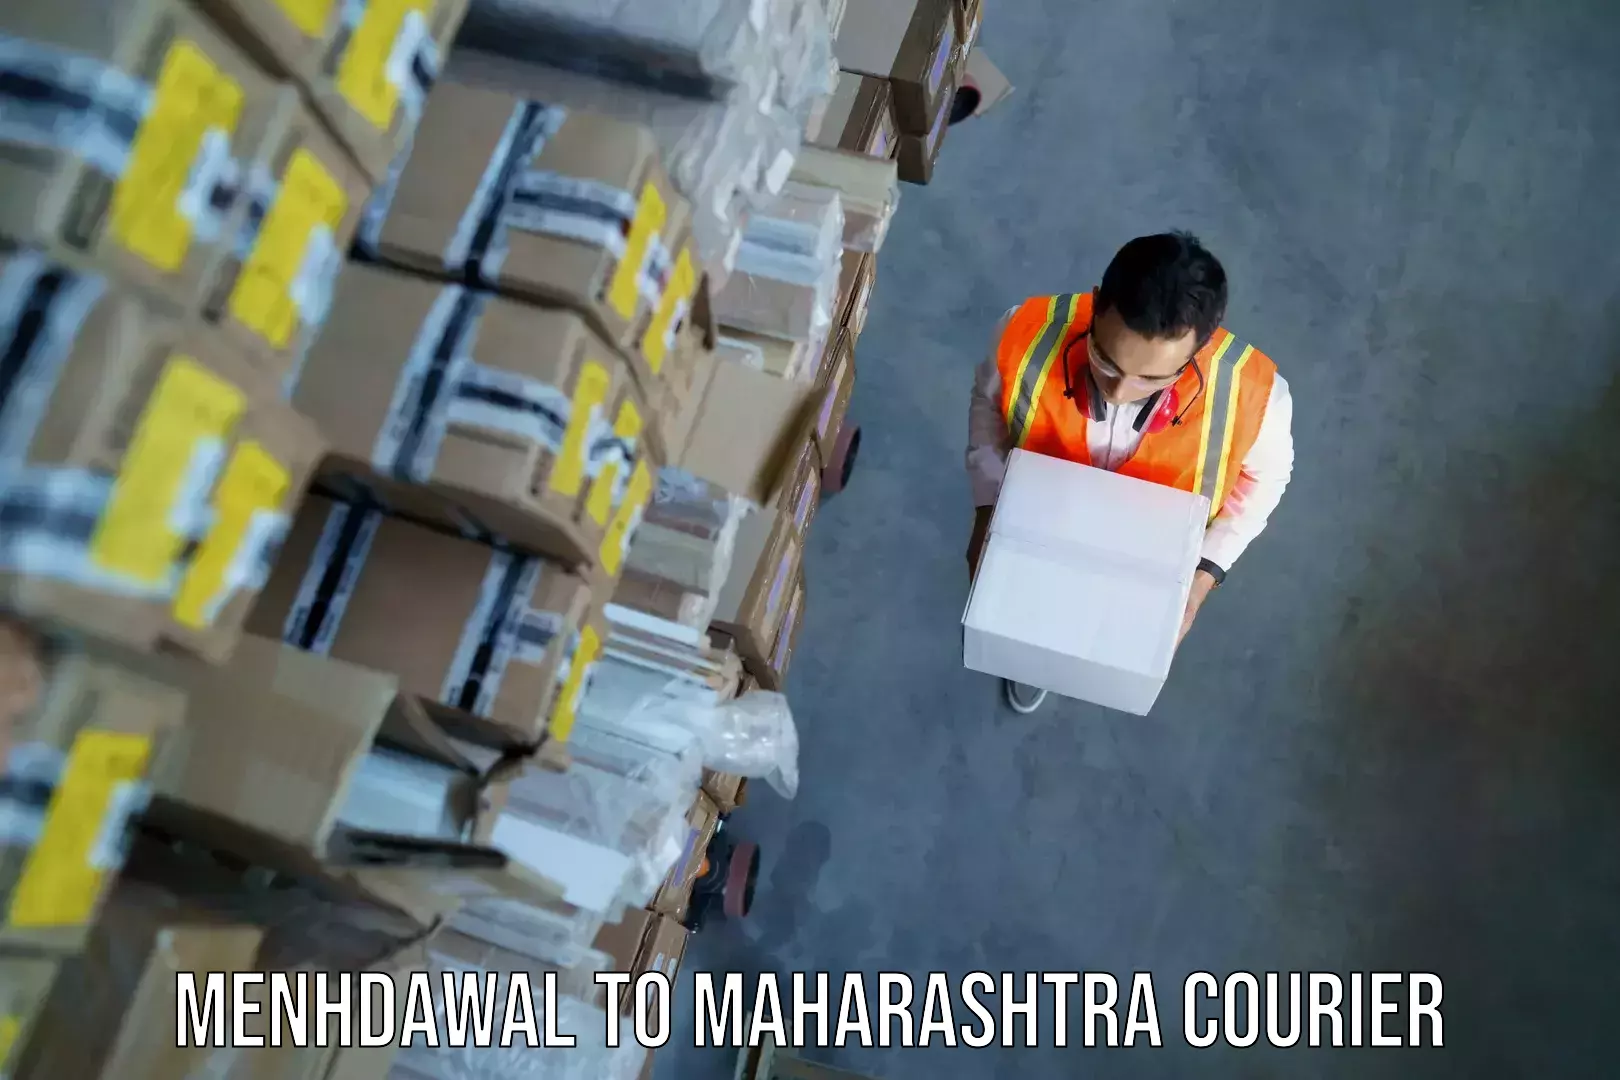 Baggage transport professionals Menhdawal to Maharashtra